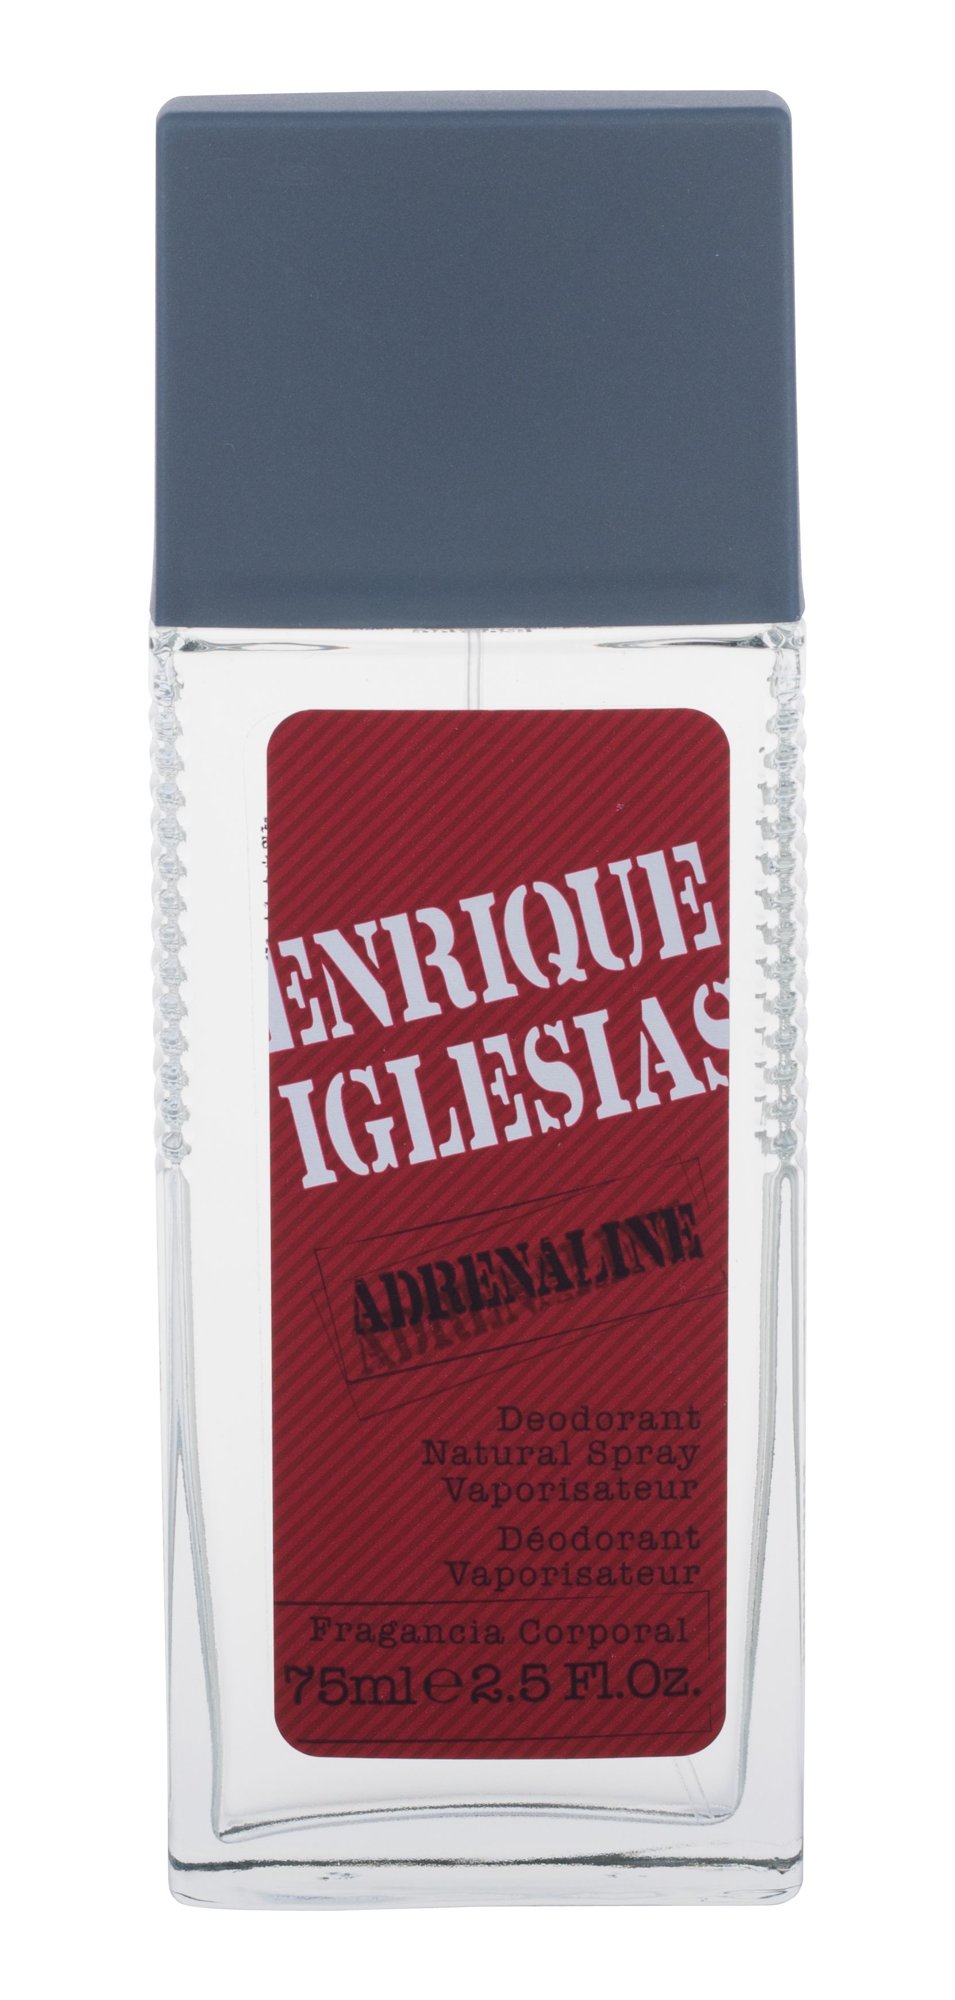 Enrique Iglesias Adrenaline 75ml dezodorantas